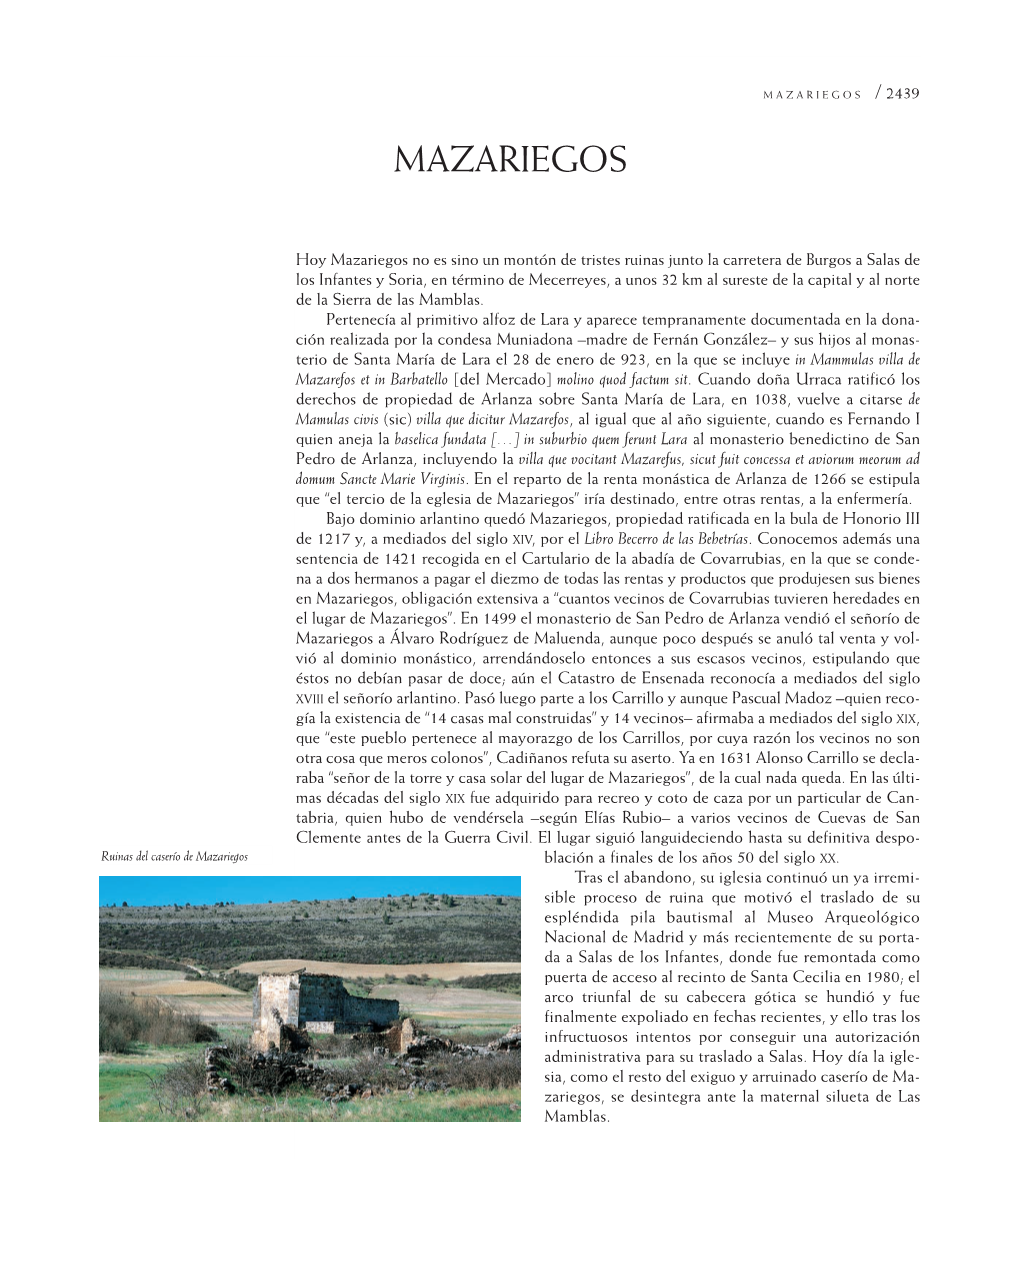 Mazariegos 5/10/09 12:14 Página 2439